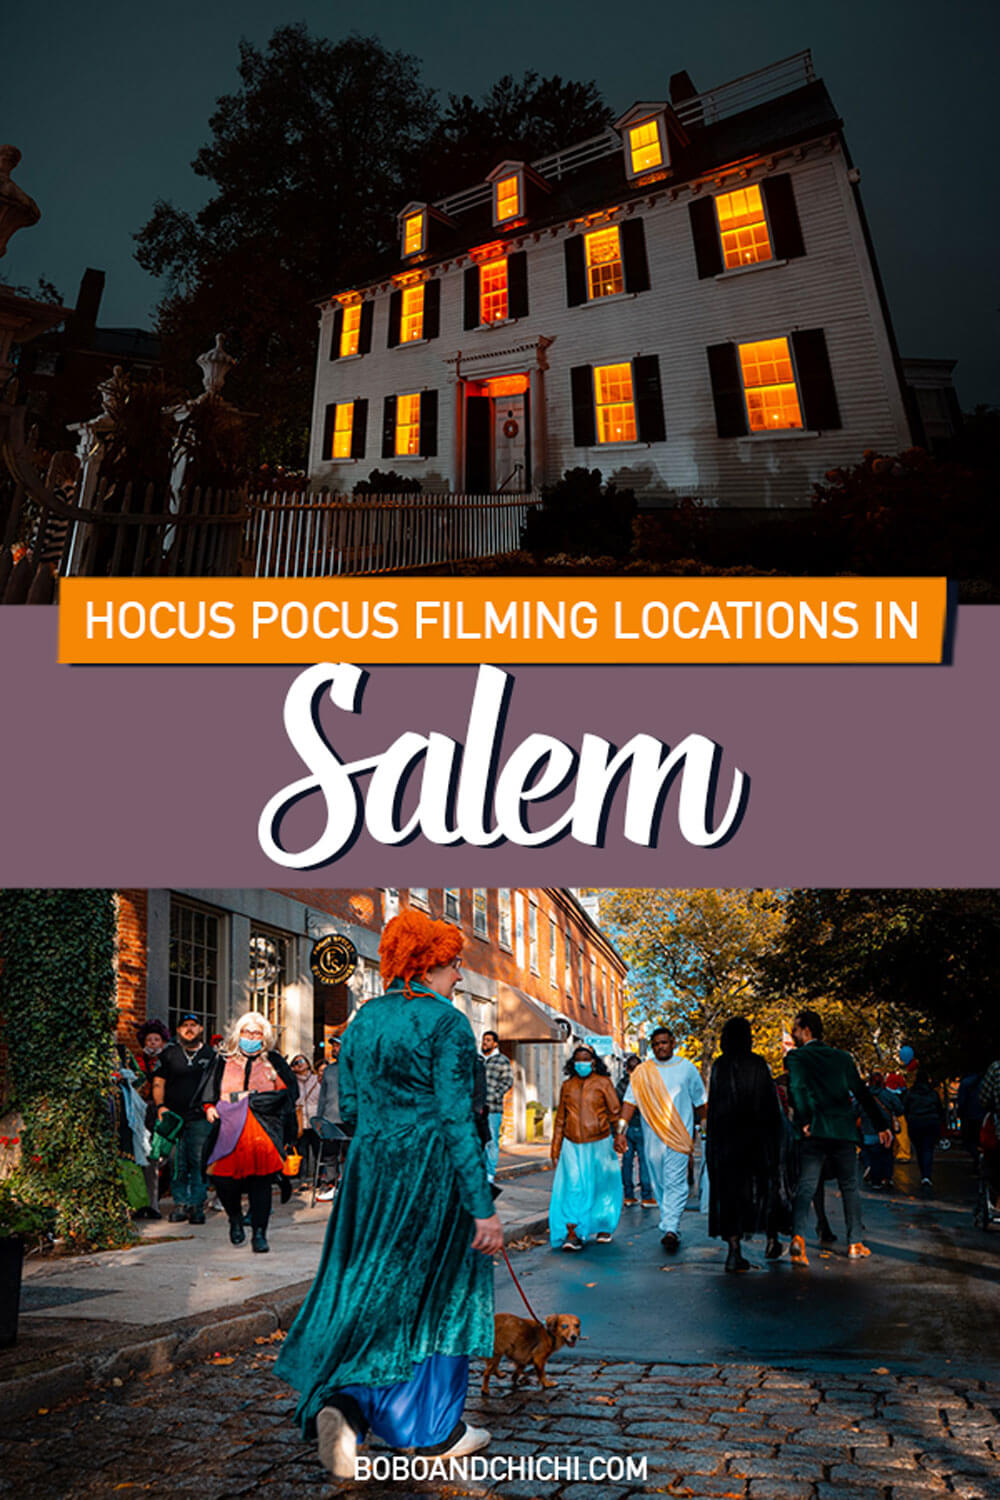 Hocus-Pocus-filming-locations-in-Salem